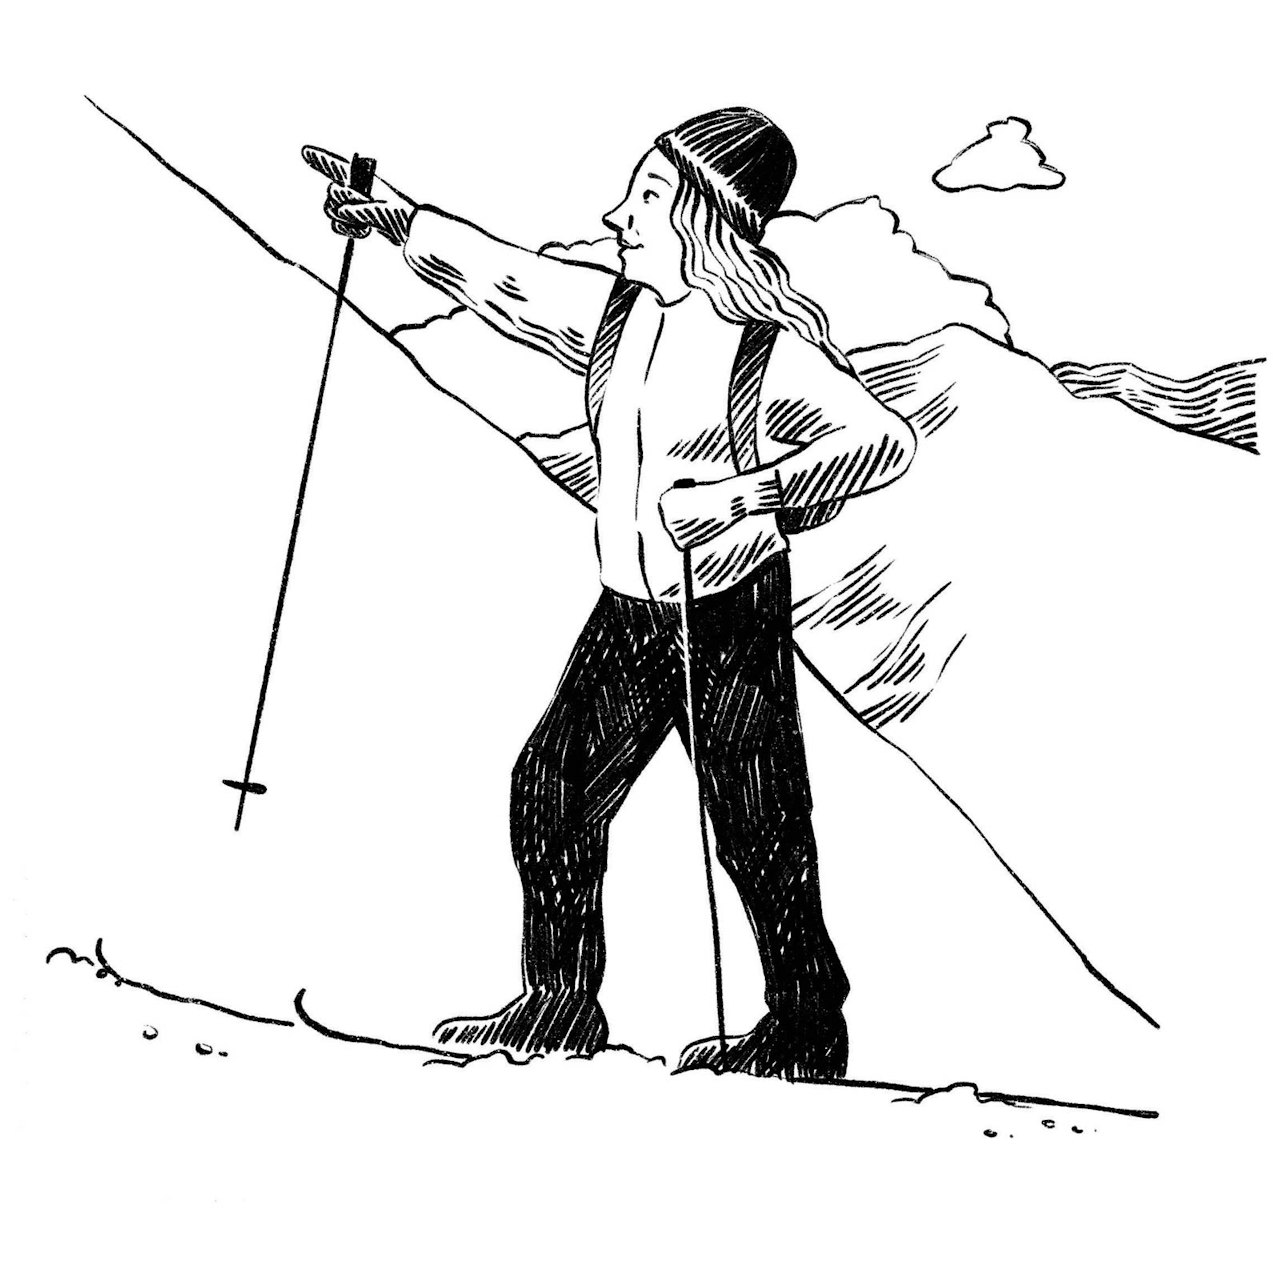 SKIEVENTYR: Birgit var så glad i å være på ski på fjellet. For å få prøve seg på prins Aksel måtte man gå på ski på tre fjell, det hadde kongen og den nye dama hans bestemt. Illustrasjon: Anne Vollaug